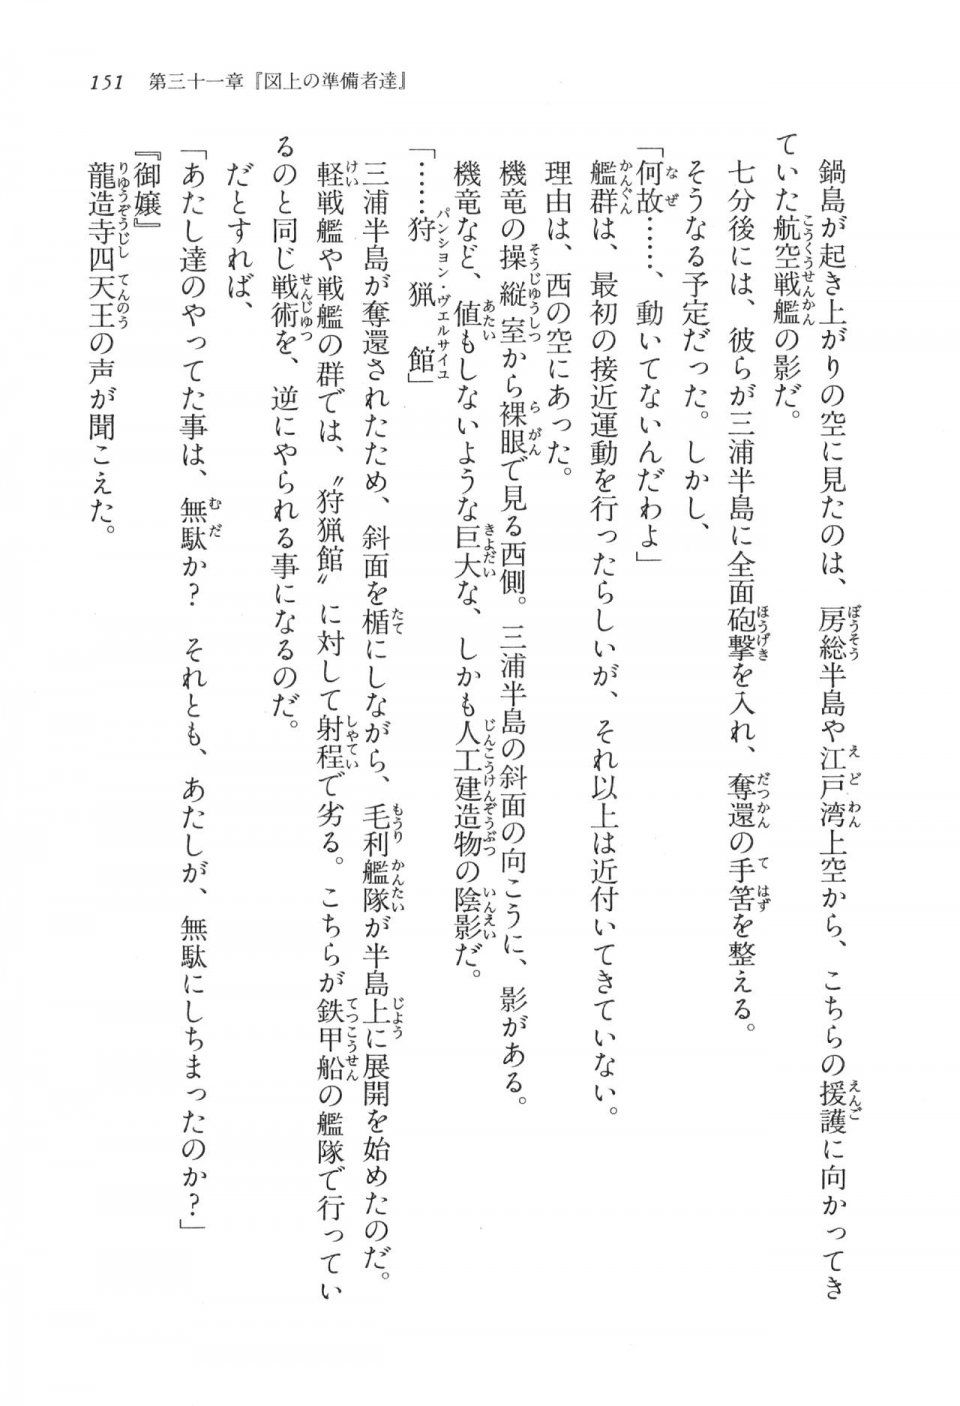 Kyoukai Senjou no Horizon LN Vol 17(7B) - Photo #151